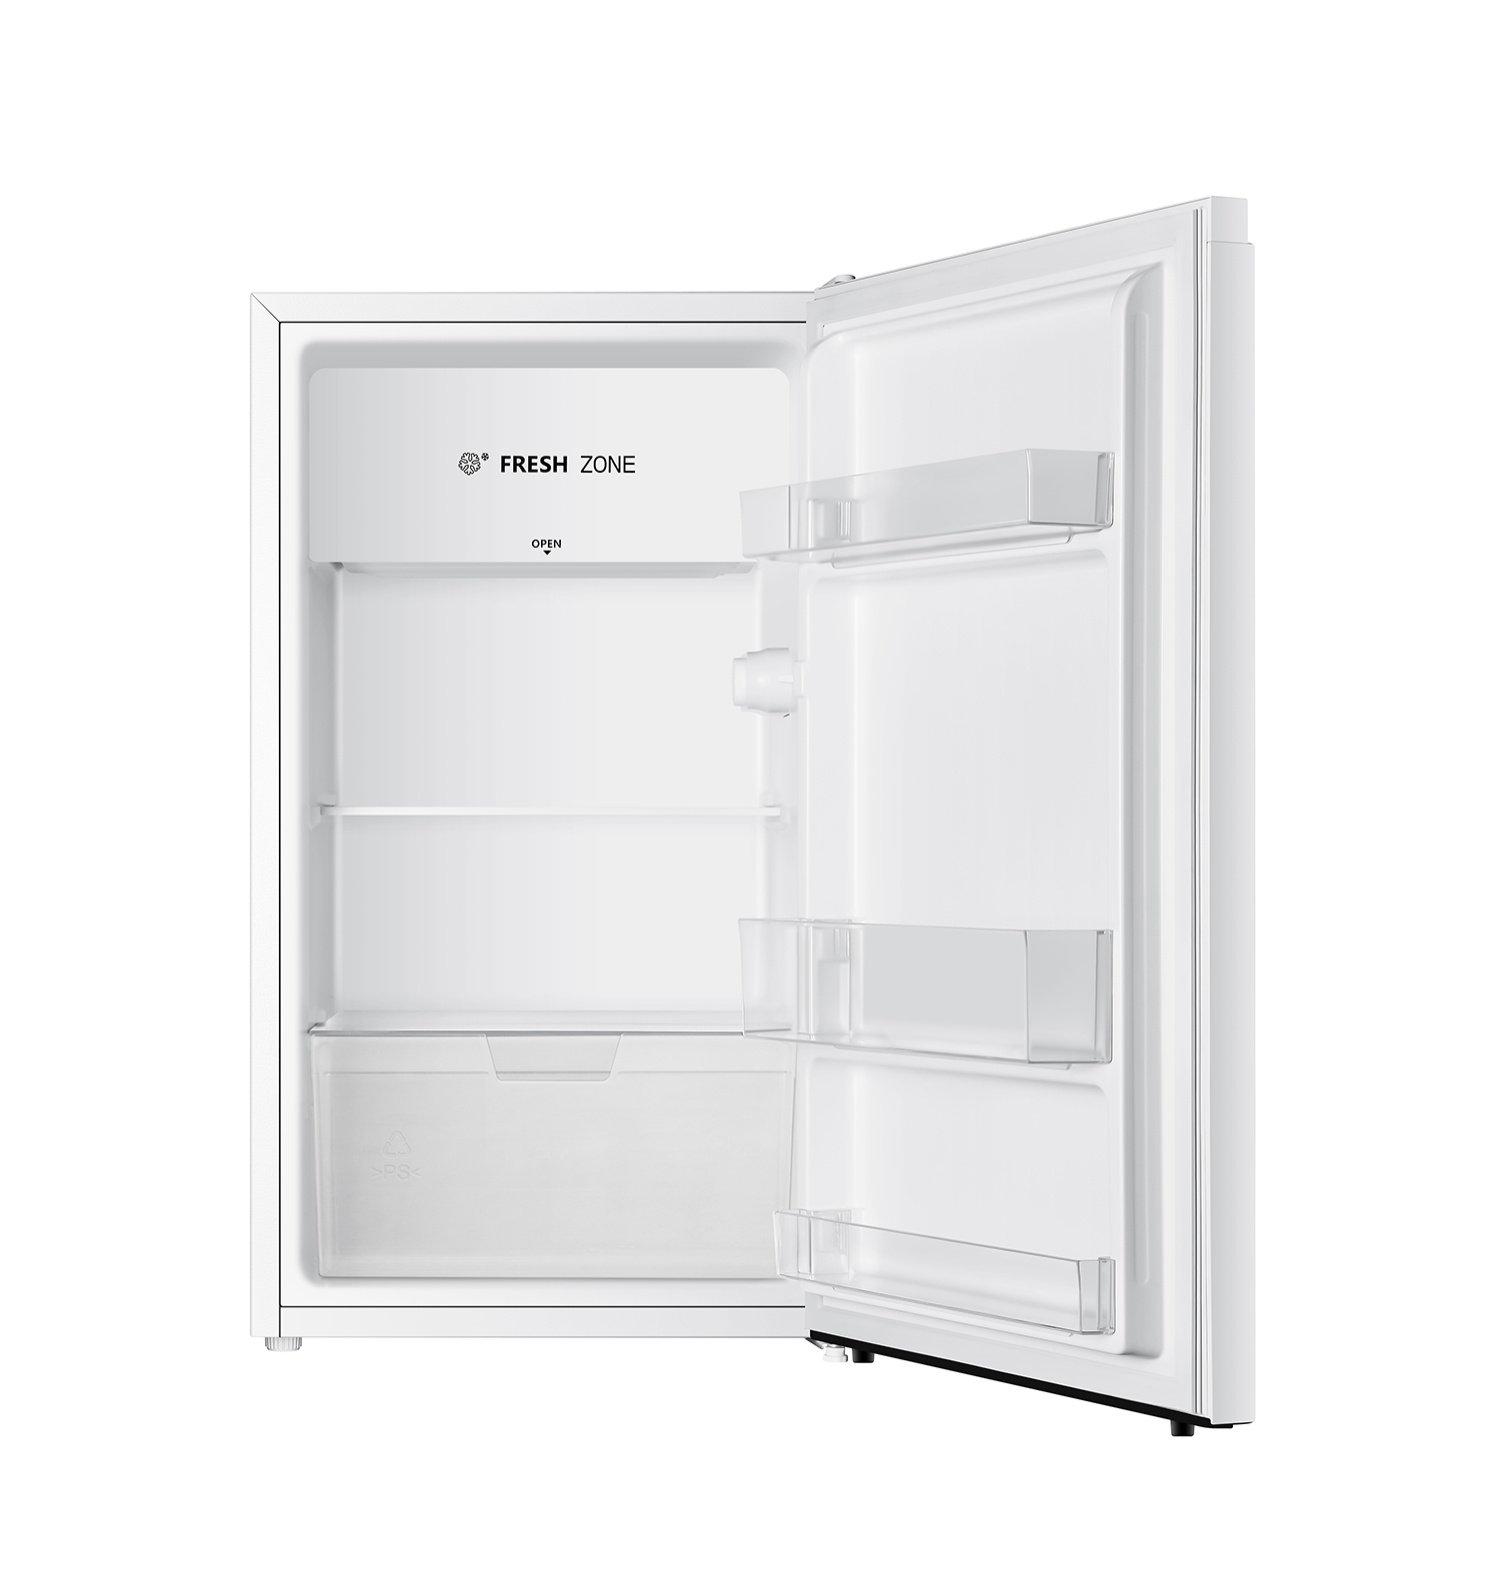 Холодильник LEX RFS 101 DF White